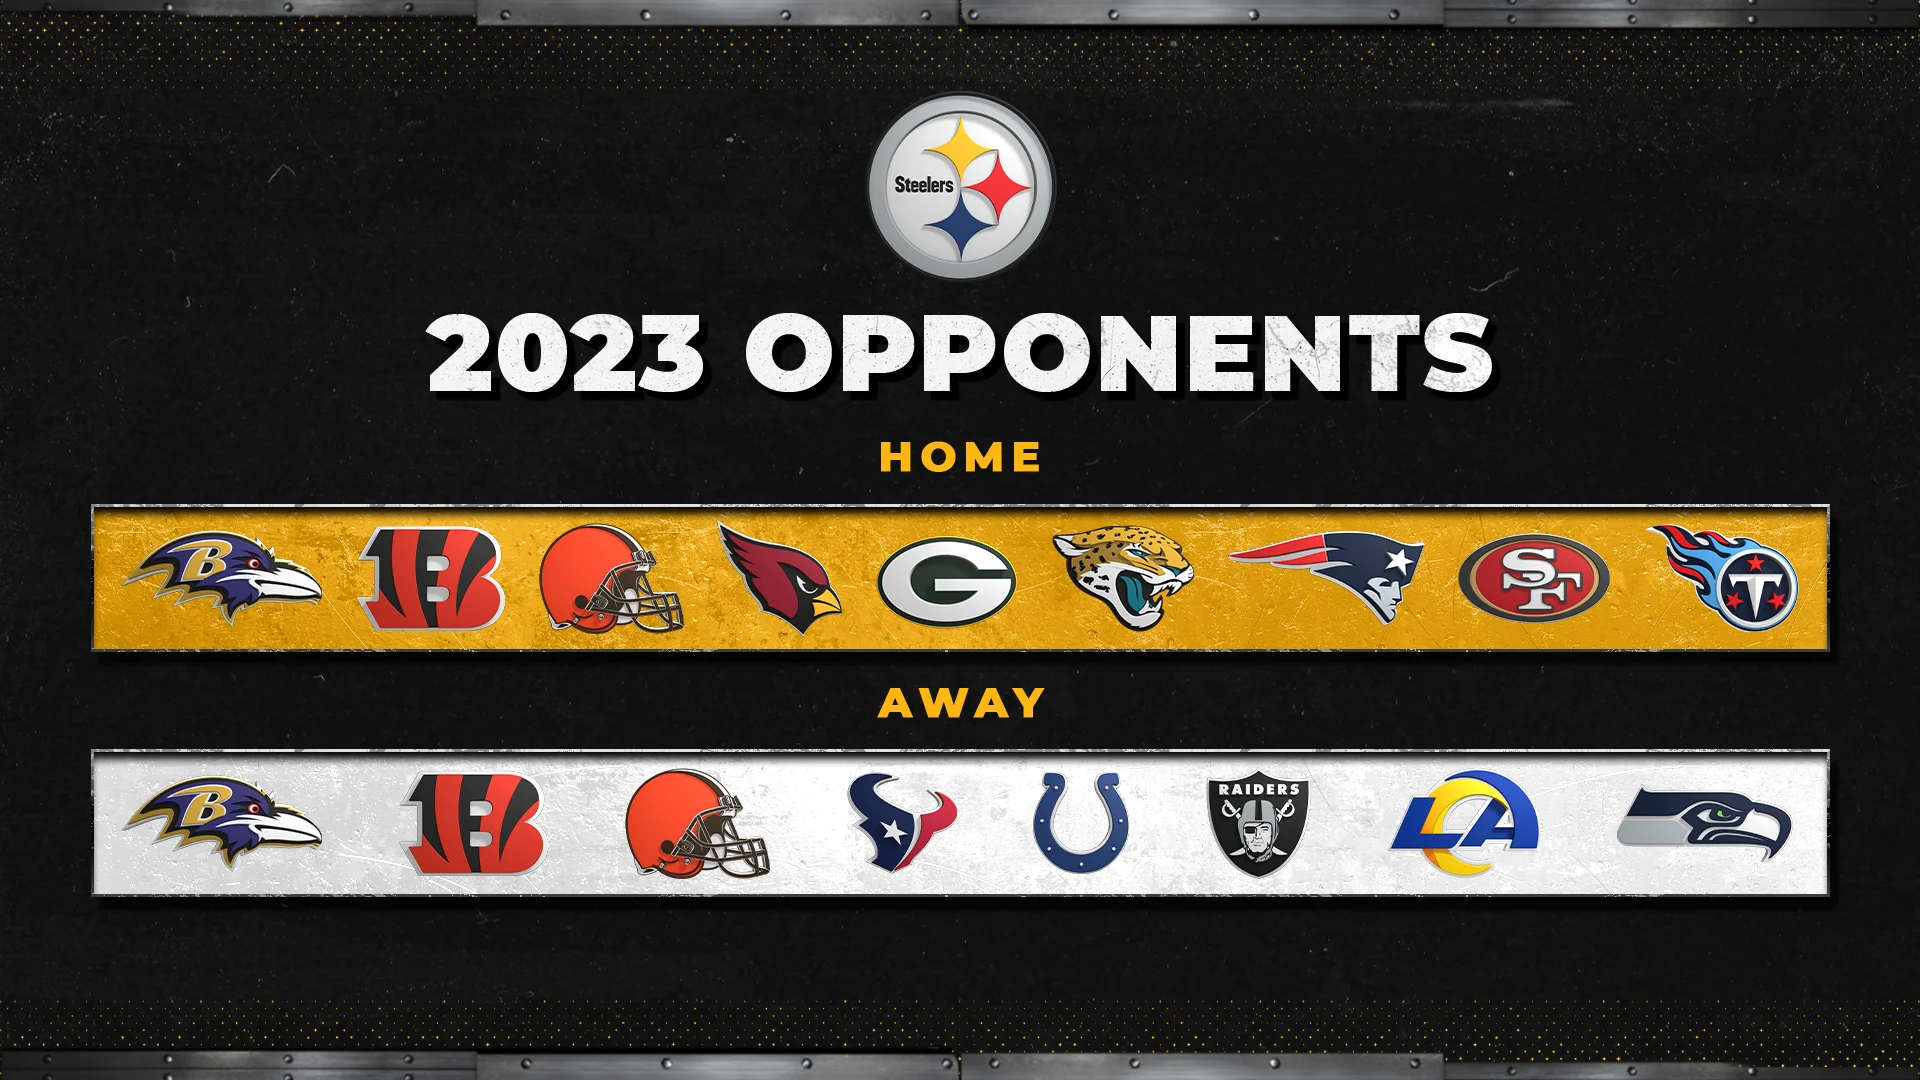 Live Steelers 2023 Schedule Release LEAKS!